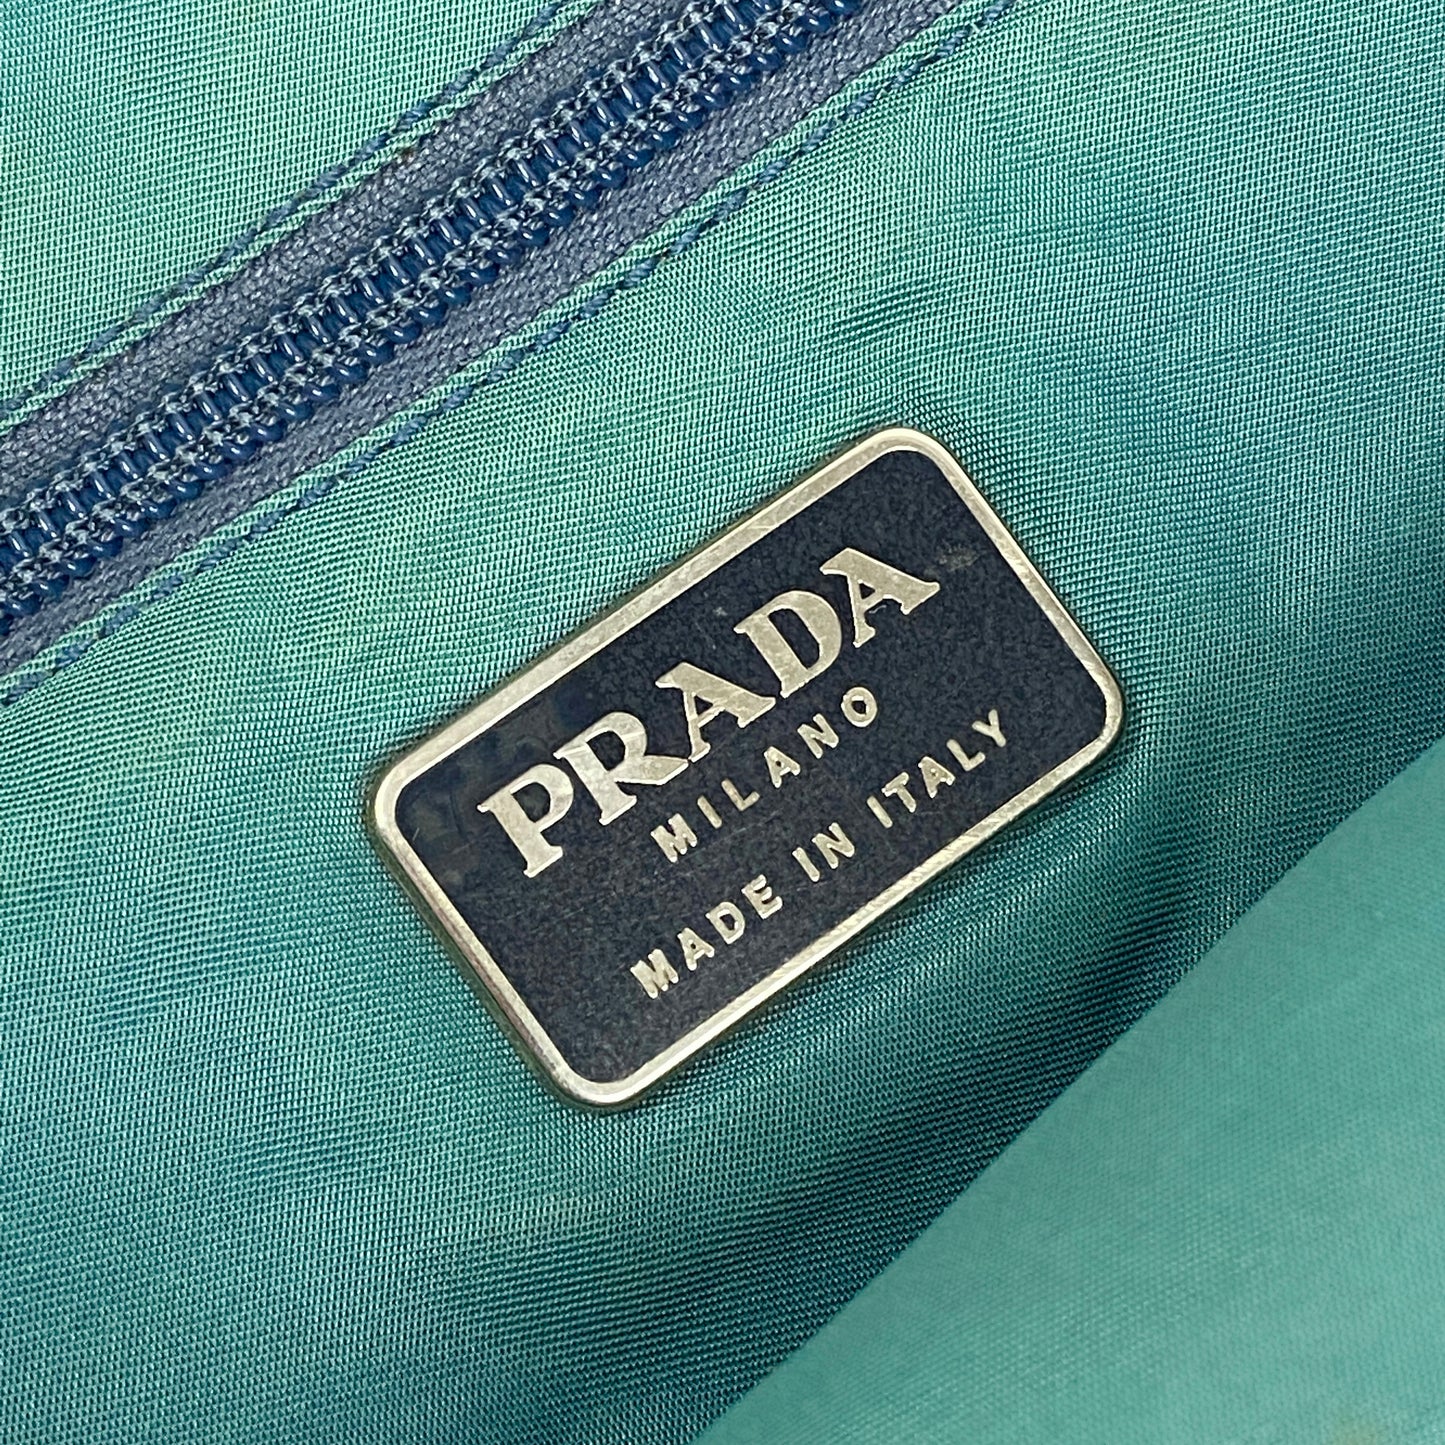 PRADA Purse / Handtasche